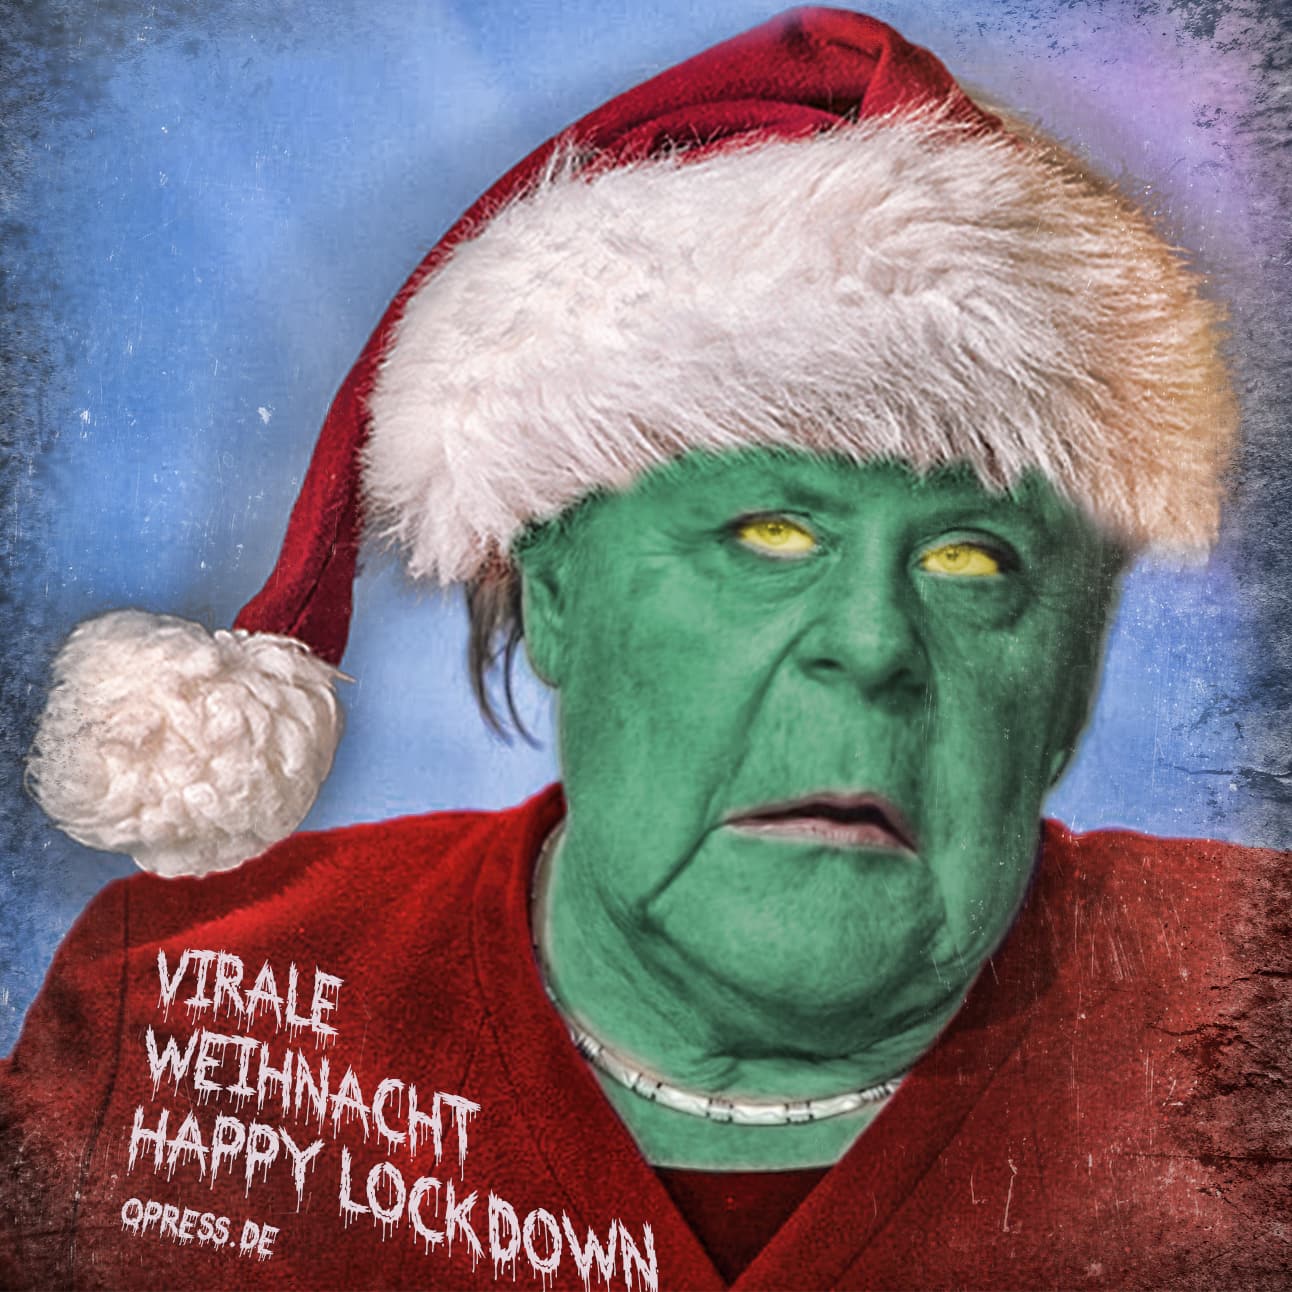 Merkel virale Weihnacht happy lockdown qpress